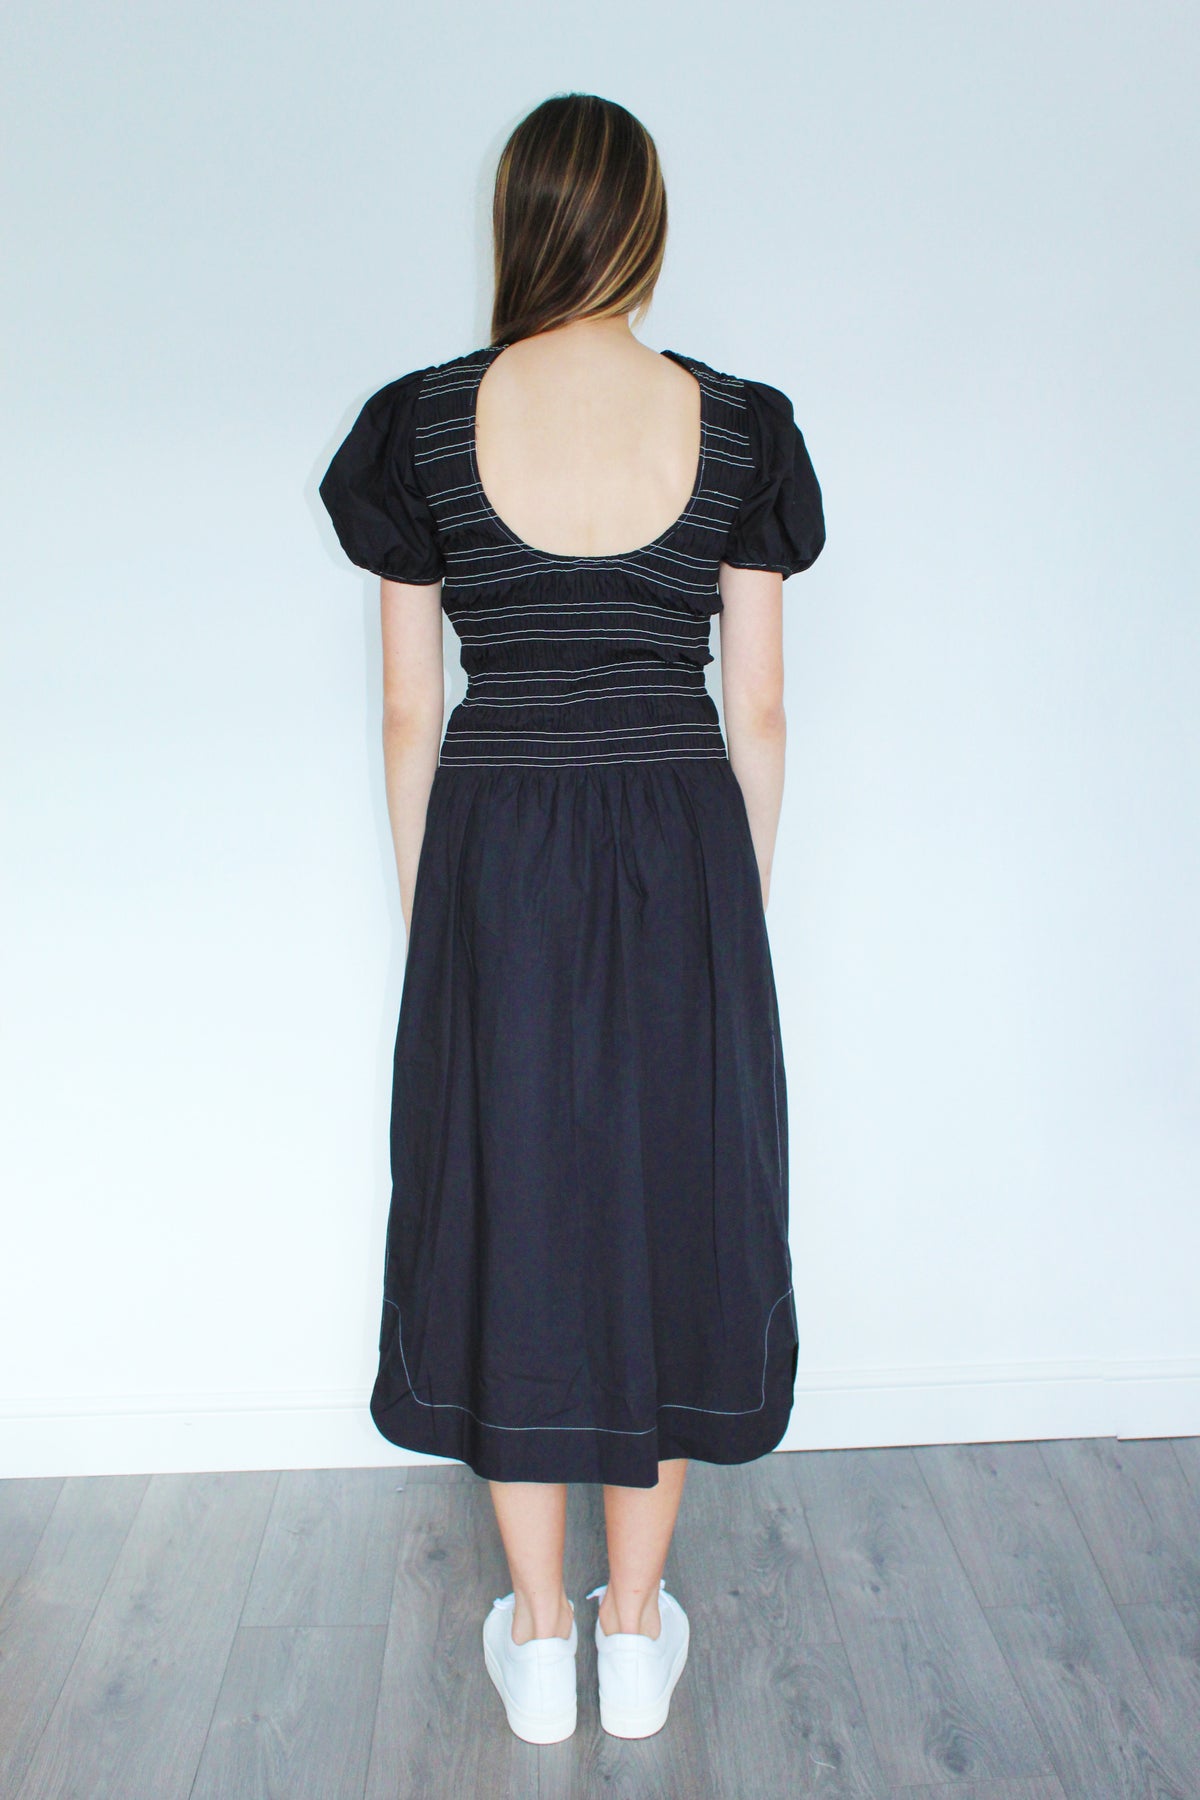 GANNI F6037 Cotton Poplin Dress in Black